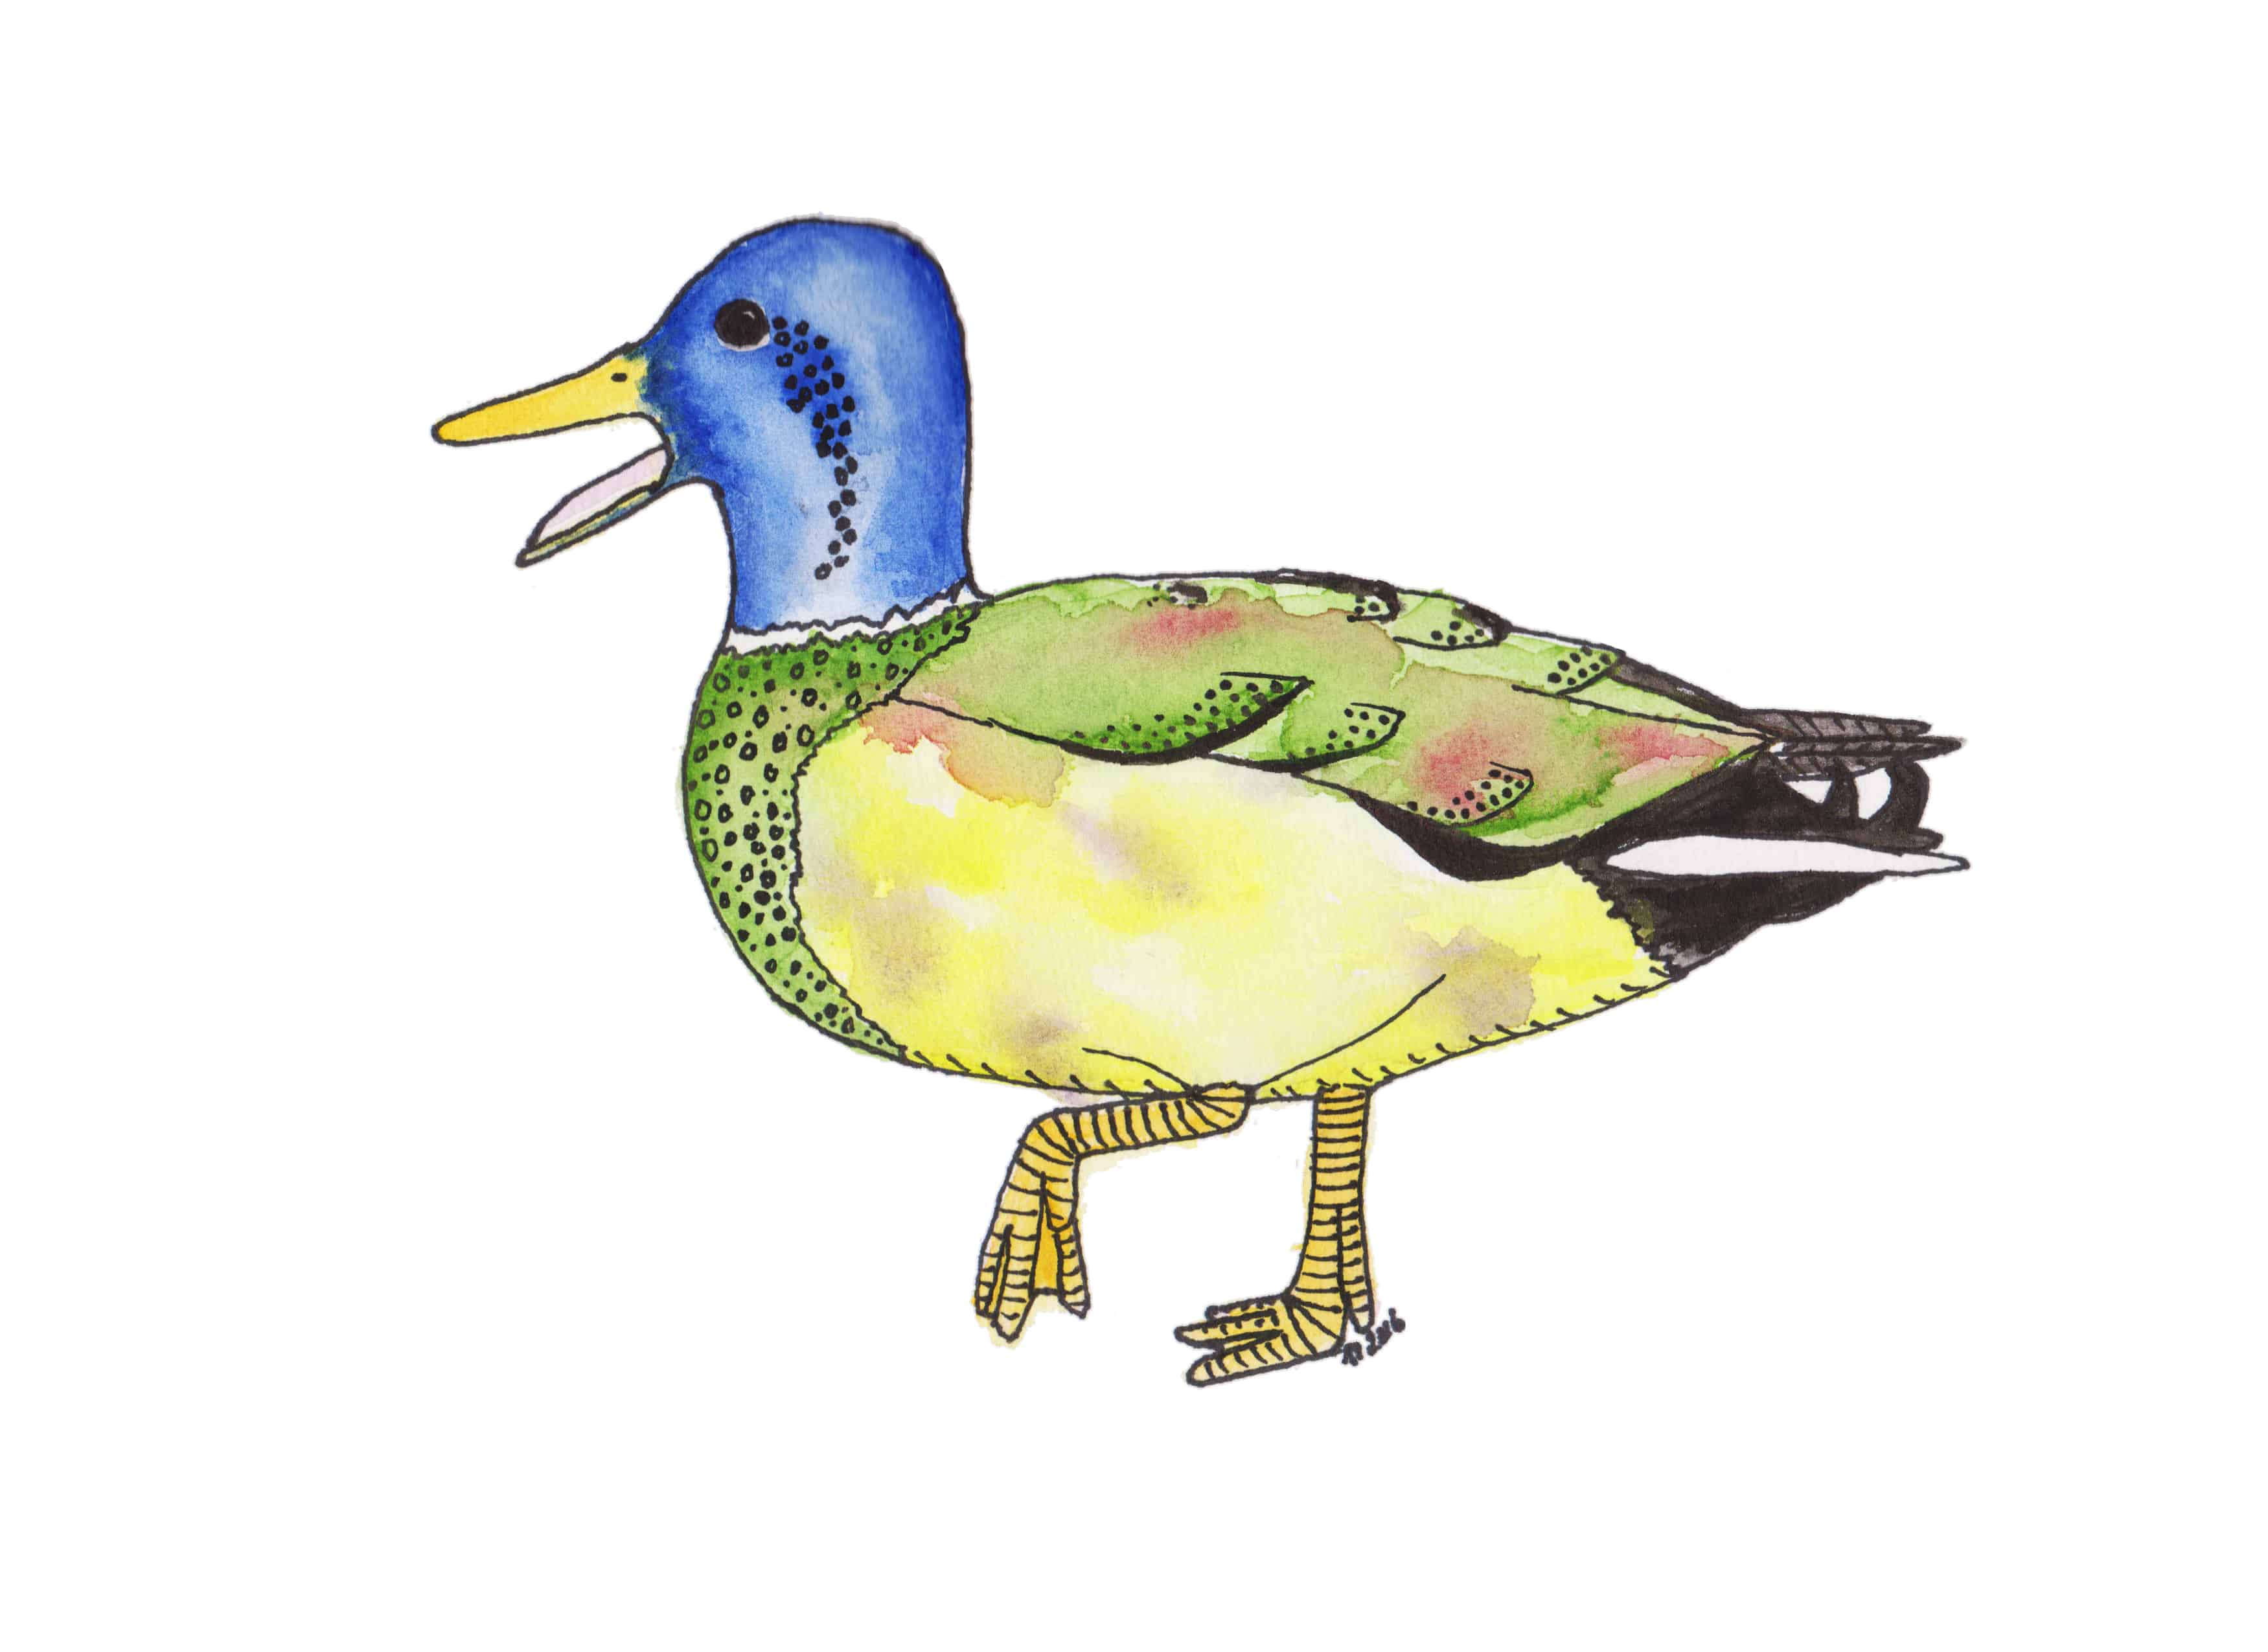 Strange Birds 11: Determined Mottled Mallard - scan - contrast